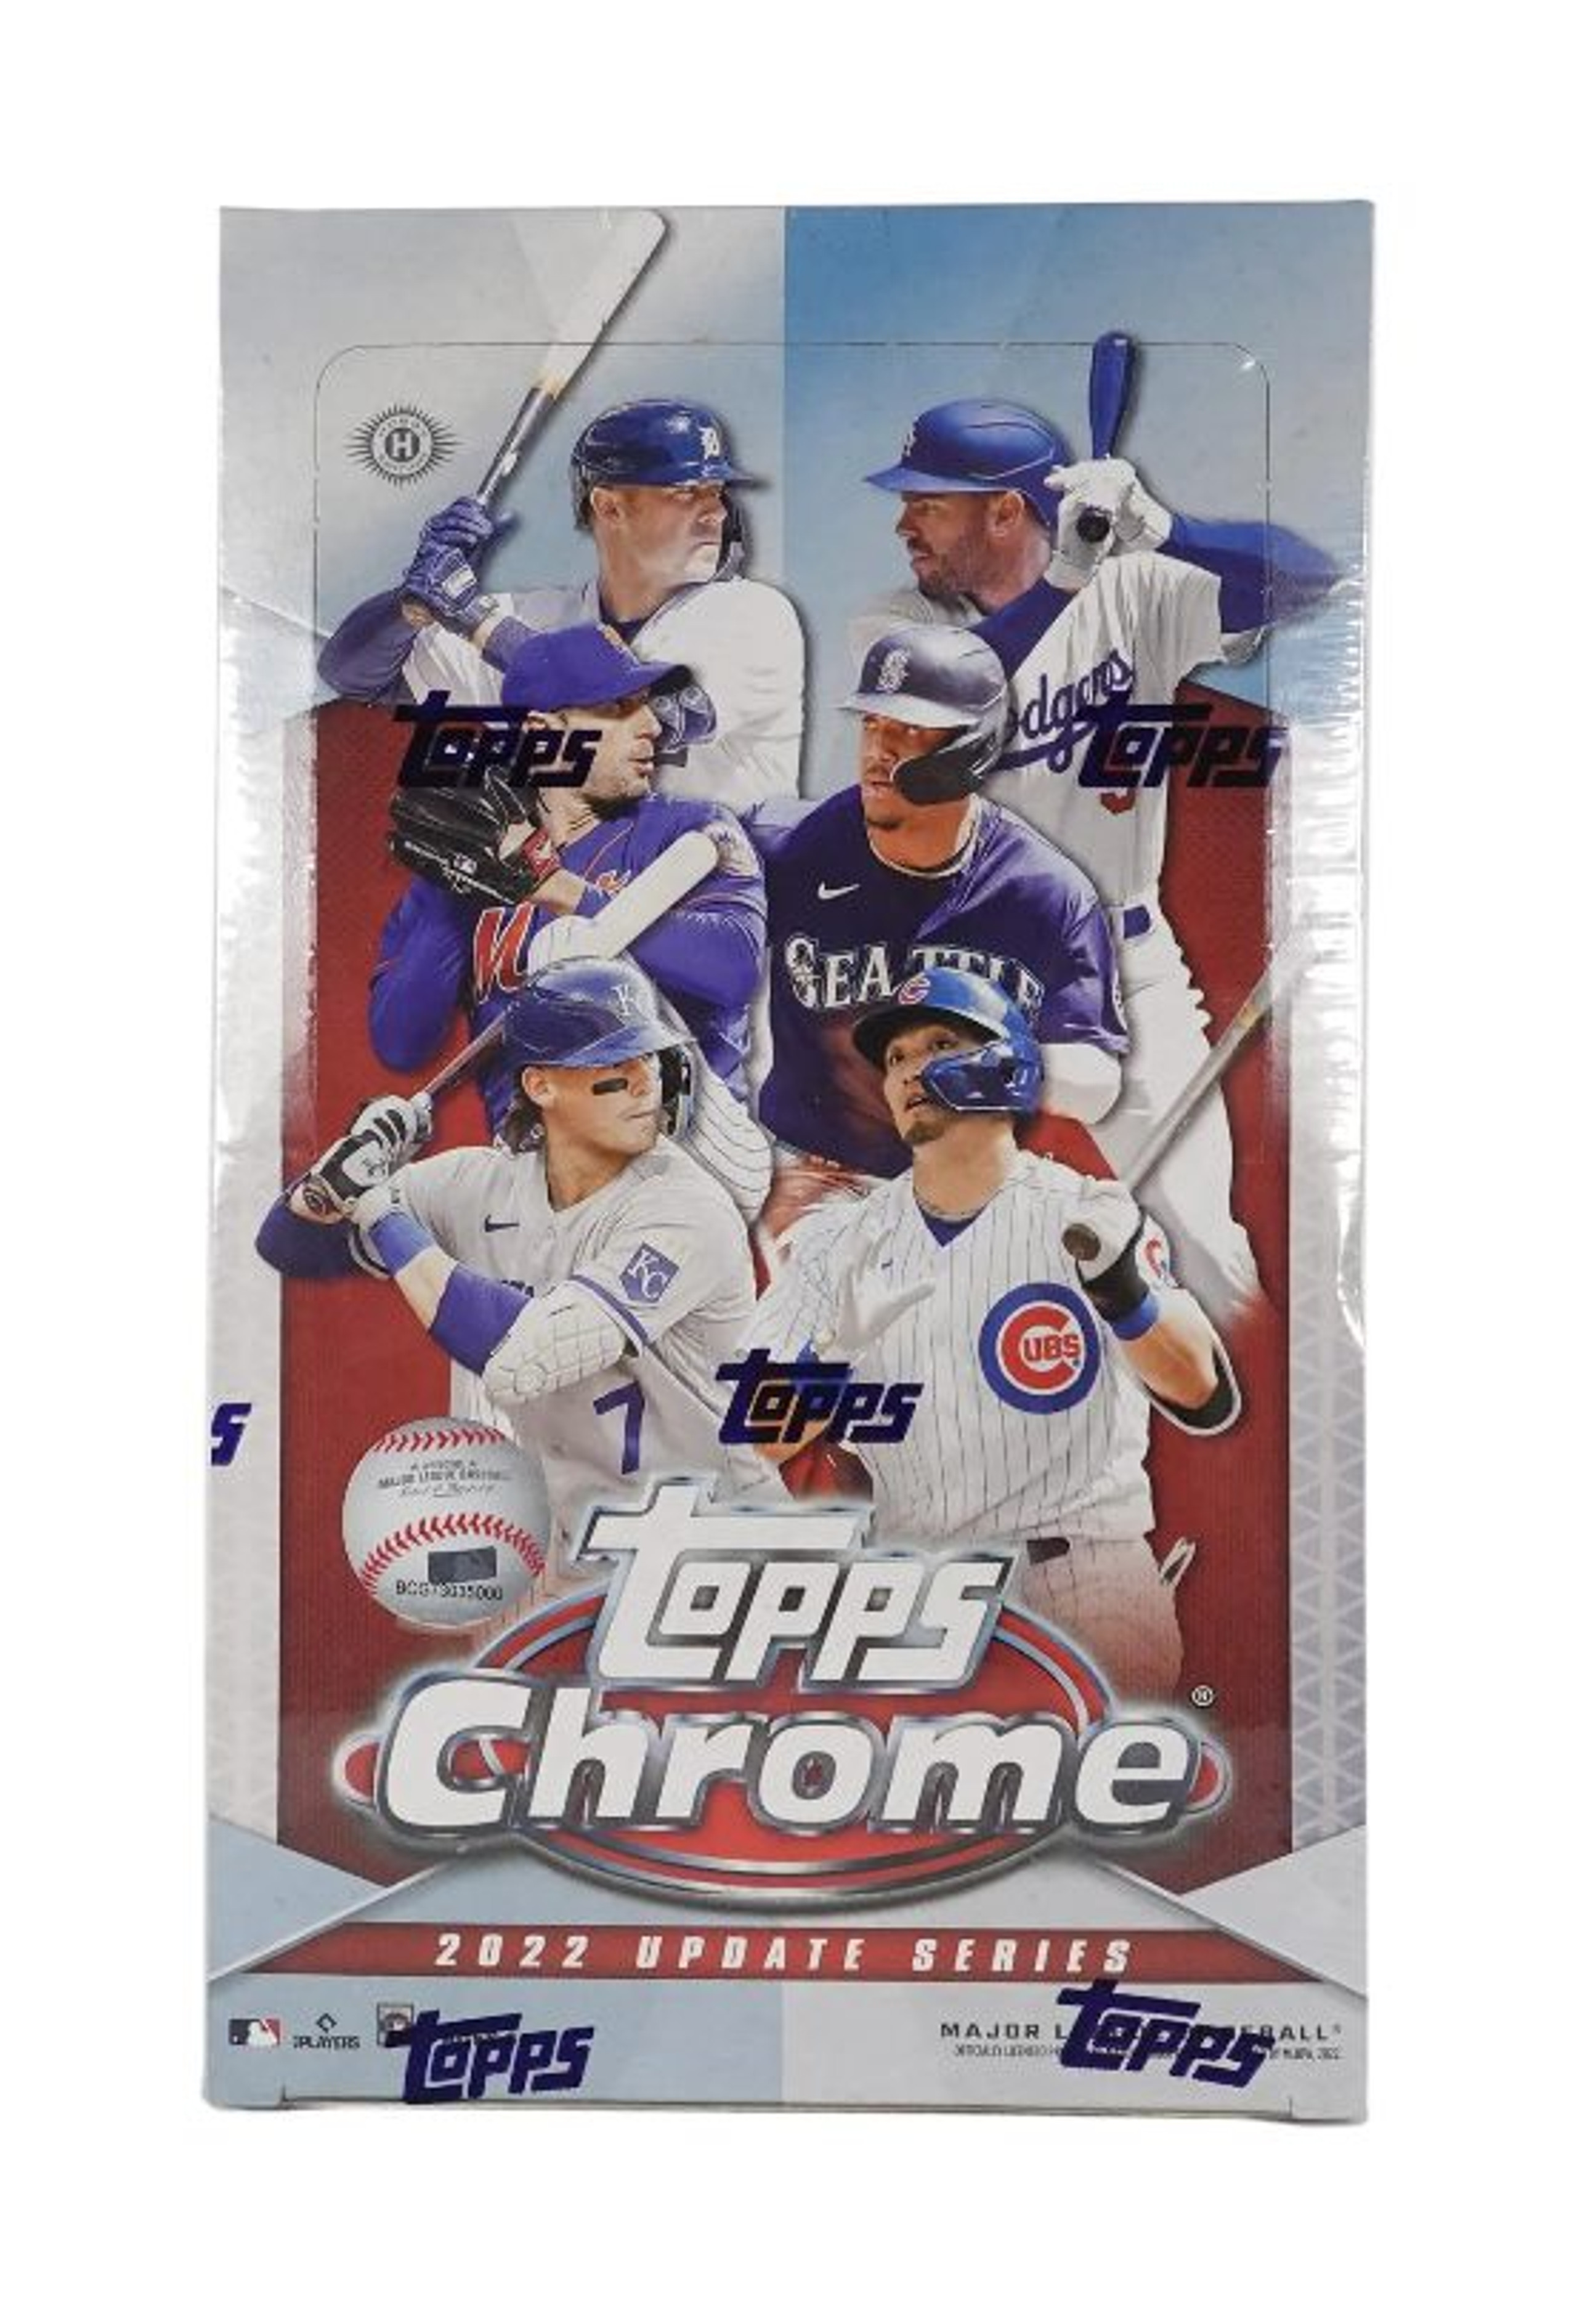 2022 Topps Chrome Update Series Baseball Hobby 12 Box Case